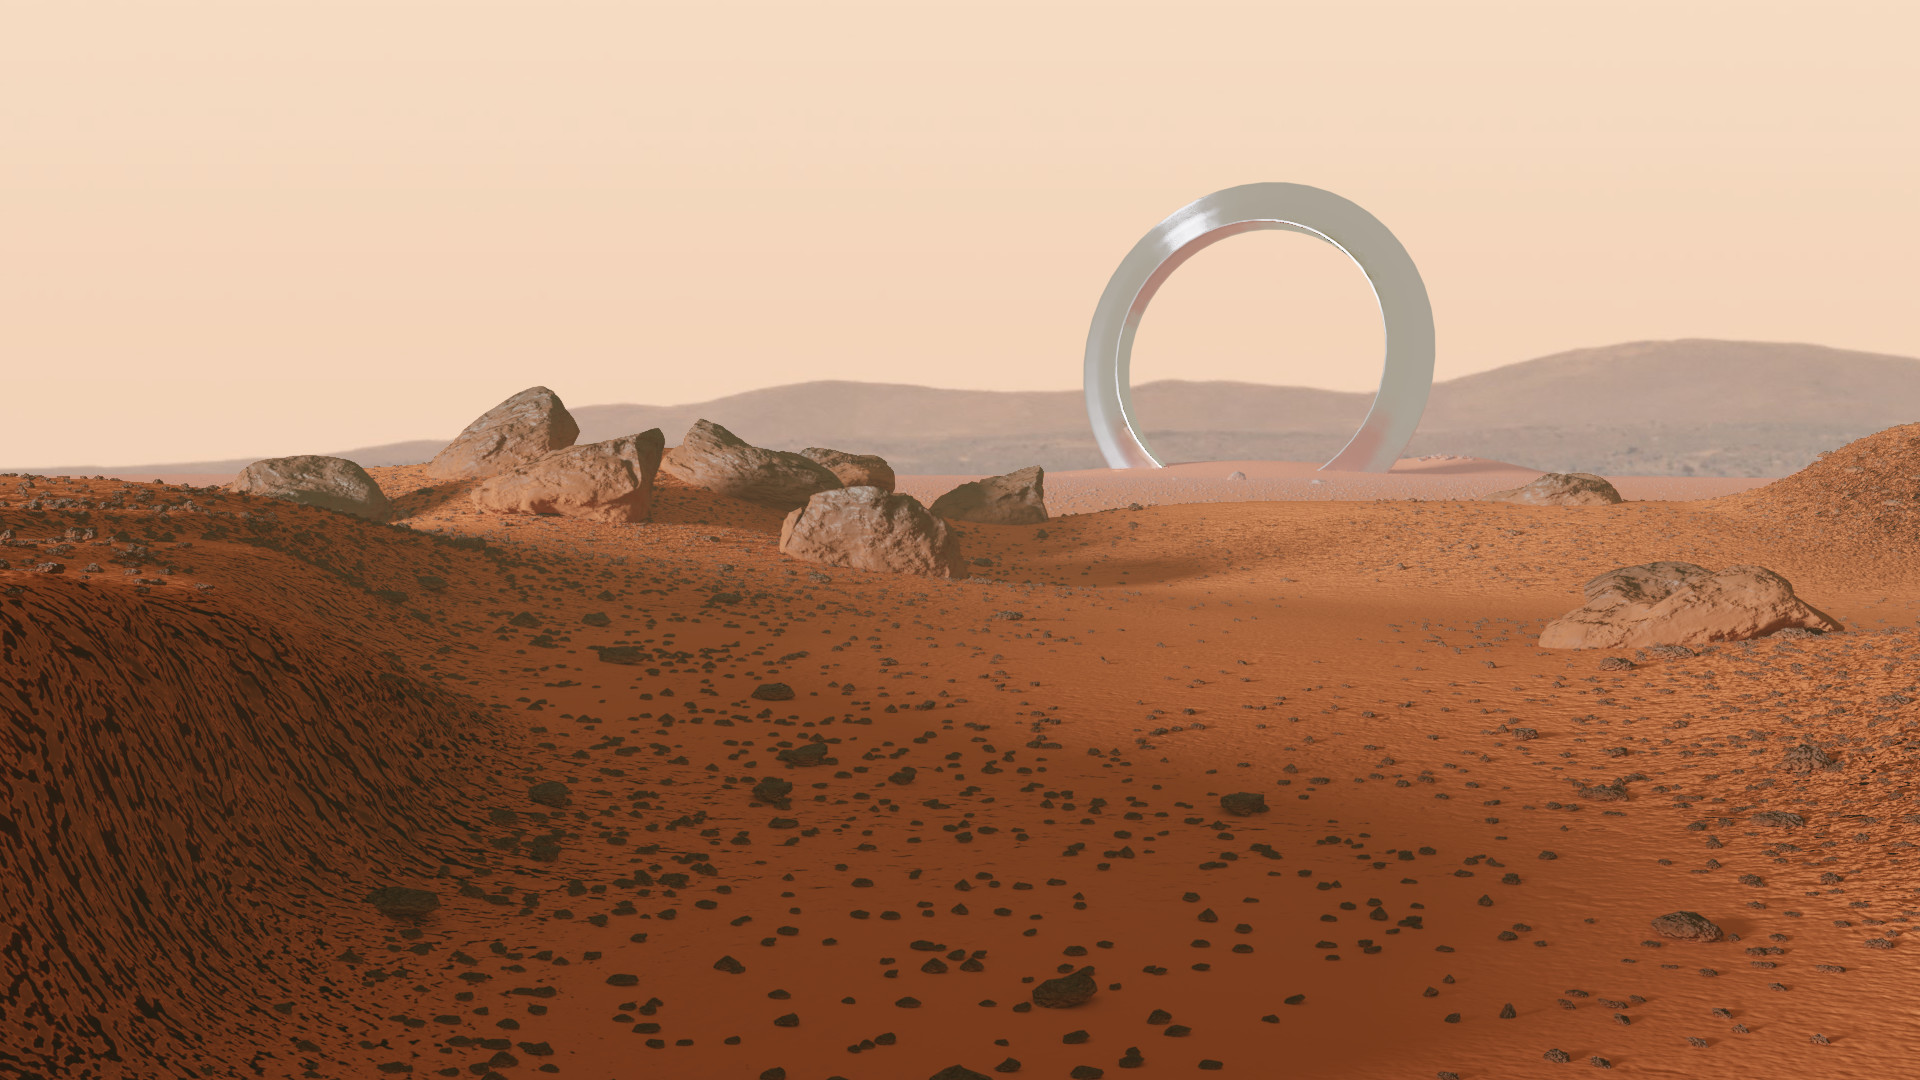 Mars landscape design